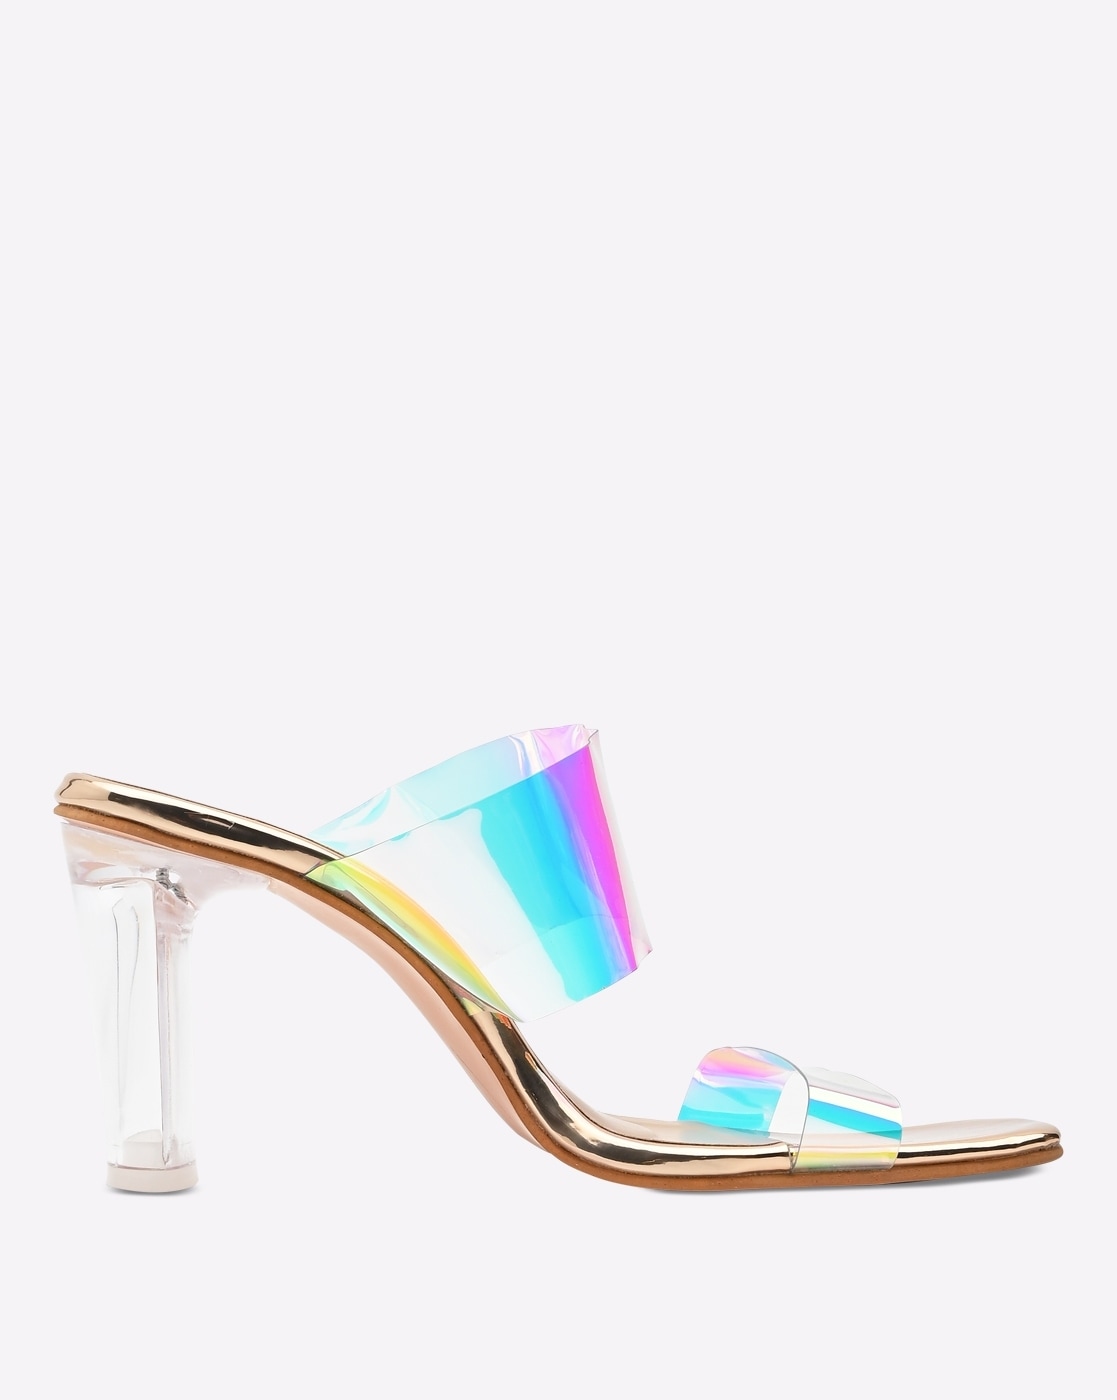 Women Pumps Platform Holographic Round Toe Stiletto High Heels Sandals  Ladies | eBay